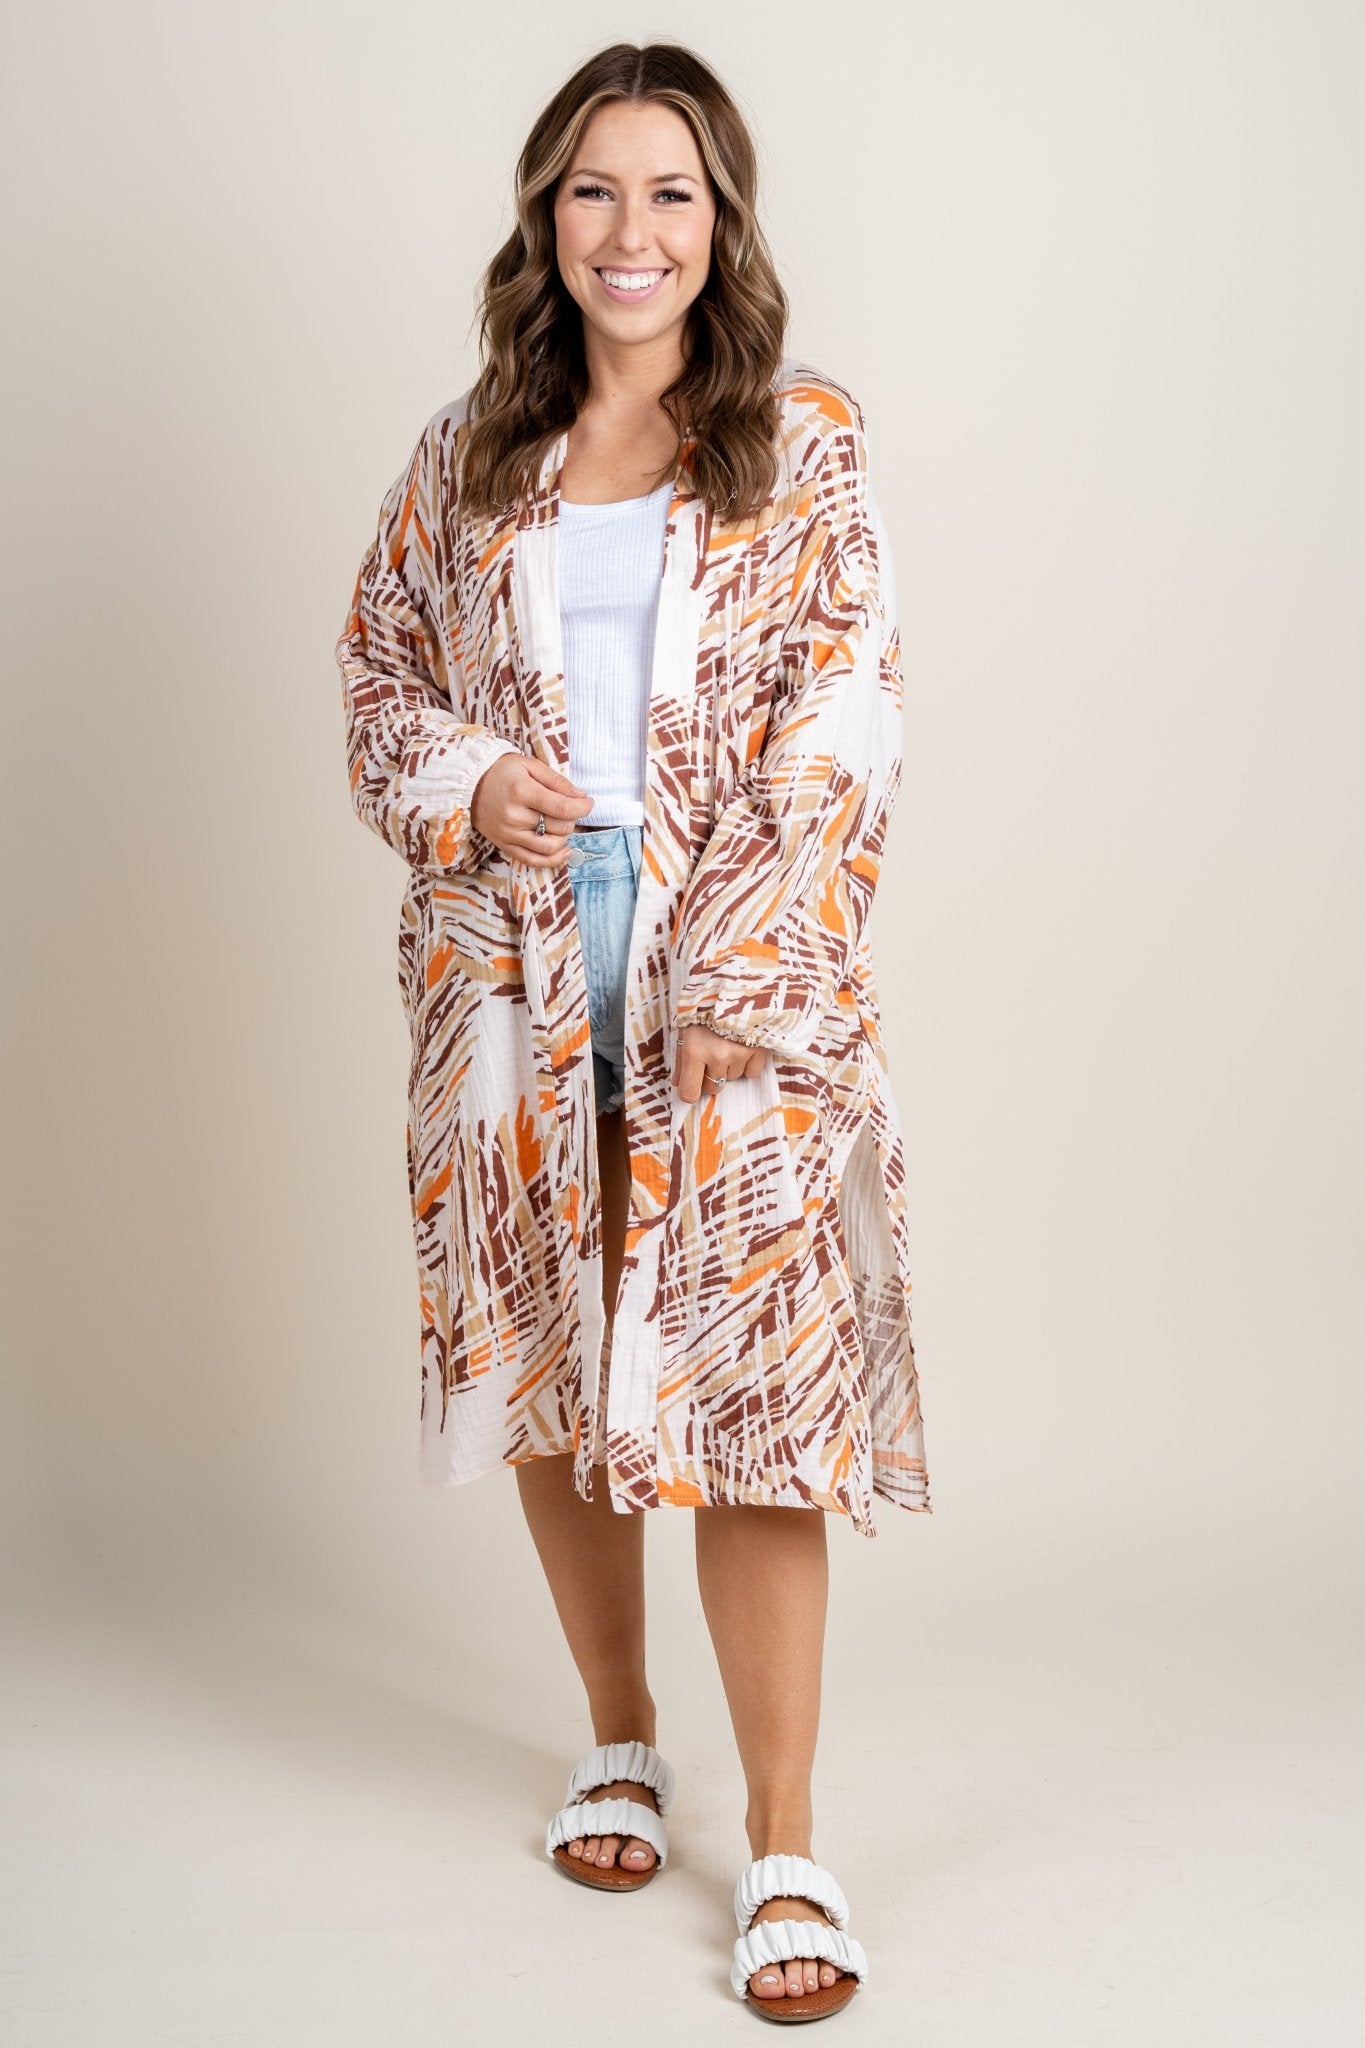 Printed long sleeve kimono orange/brown - Trendy Kimonos - Fashion Cardigans & Cute Kimonos at Lush Fashion Lounge Boutique in Oklahoma City